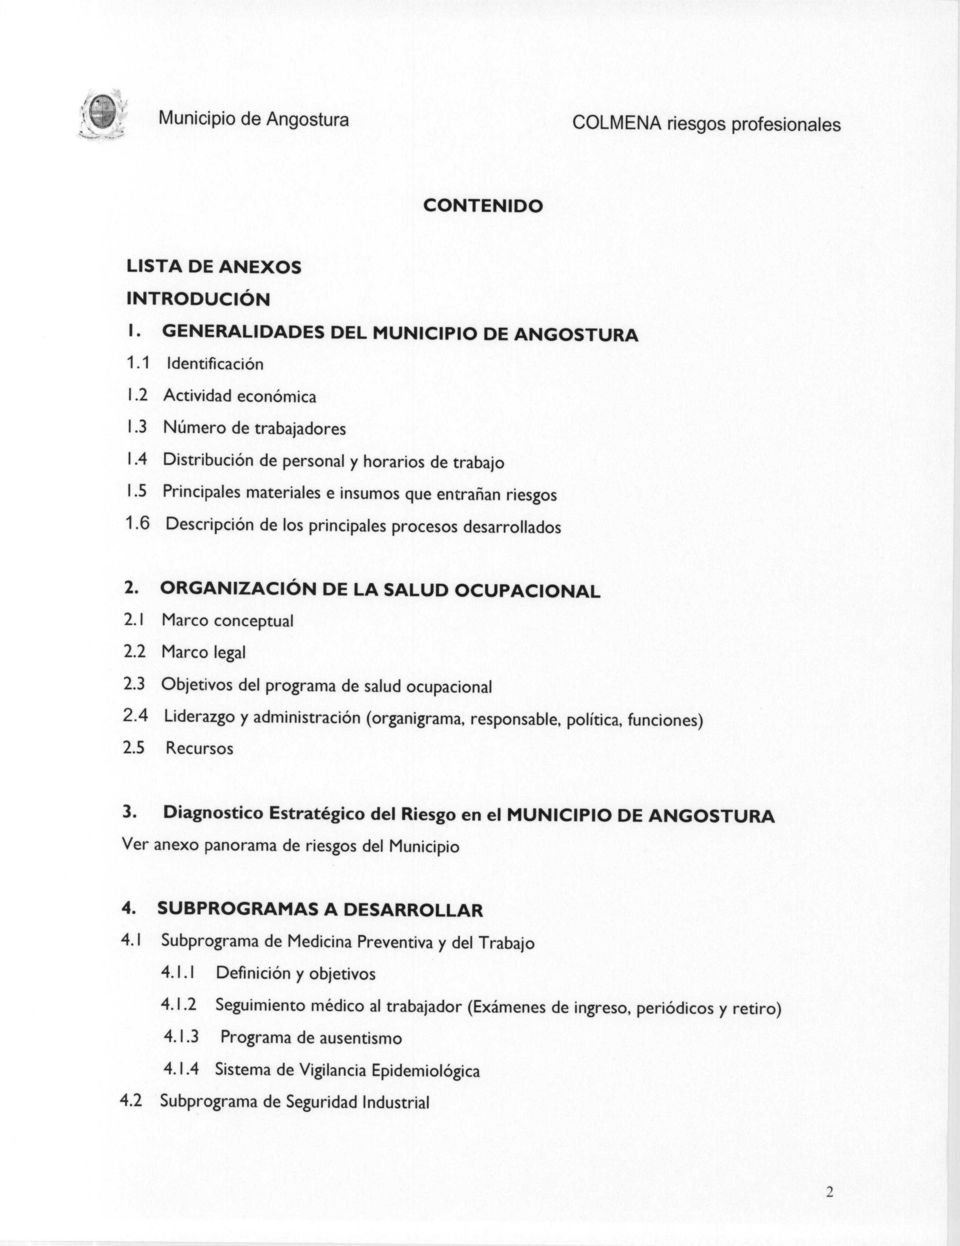 ORGANIZACIÓN DE LA SALUD OCUPACIONAL 2.1 Marco conceptual 2.2 Marco legal 2.3 Objetivos del programa de salud ocupacional 2.